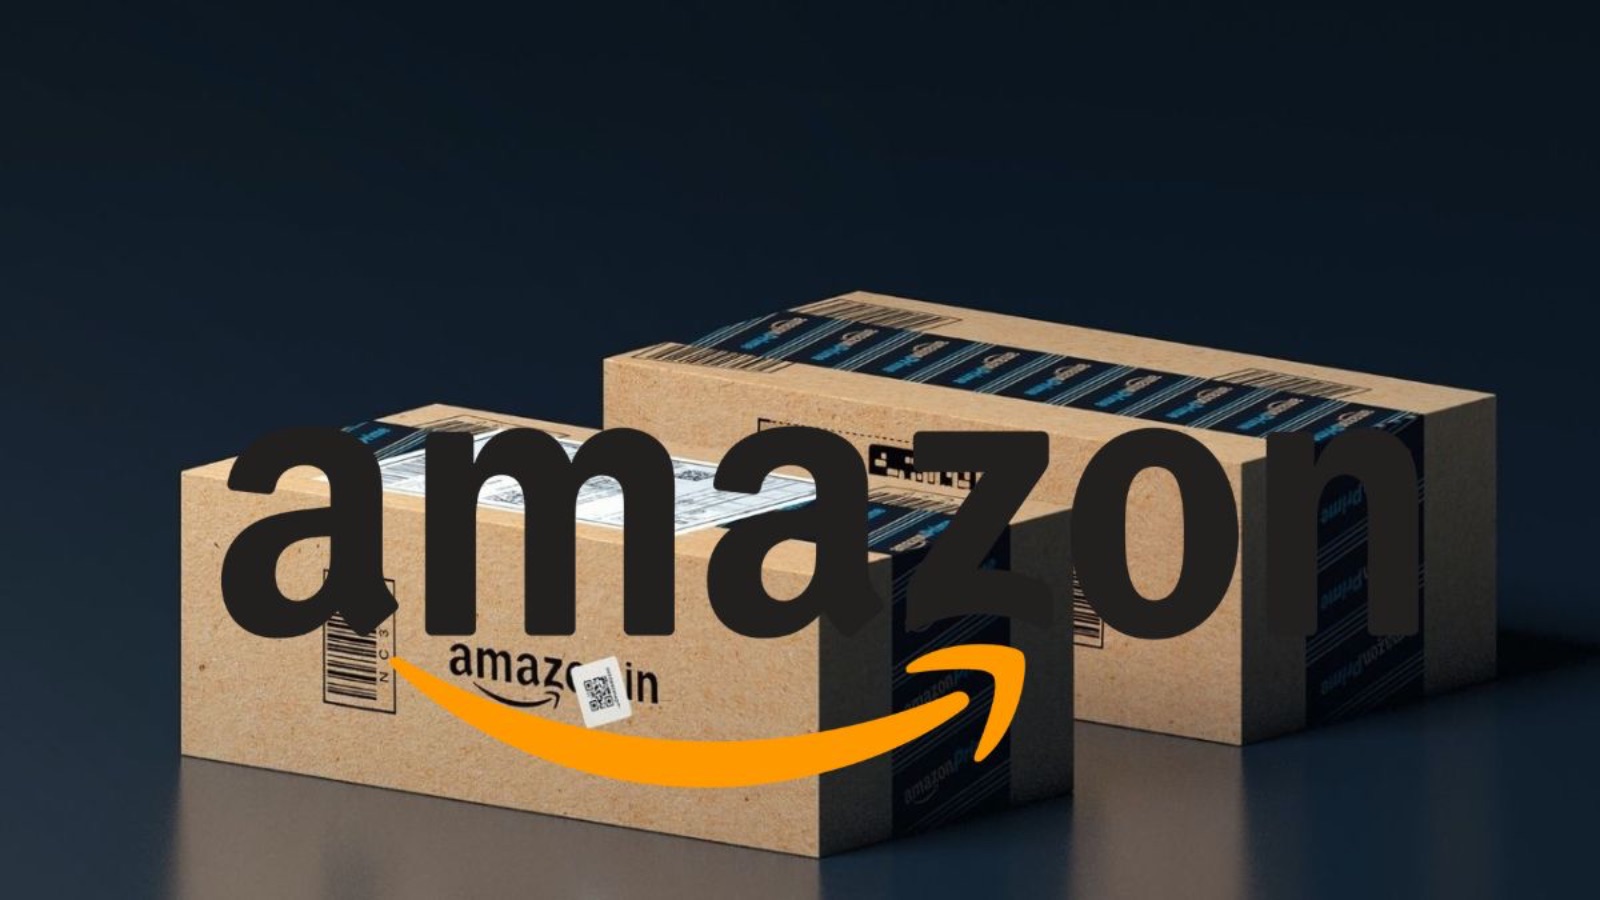 Amazon, offerte NUOVE ed esclusive all'80% di sconto 